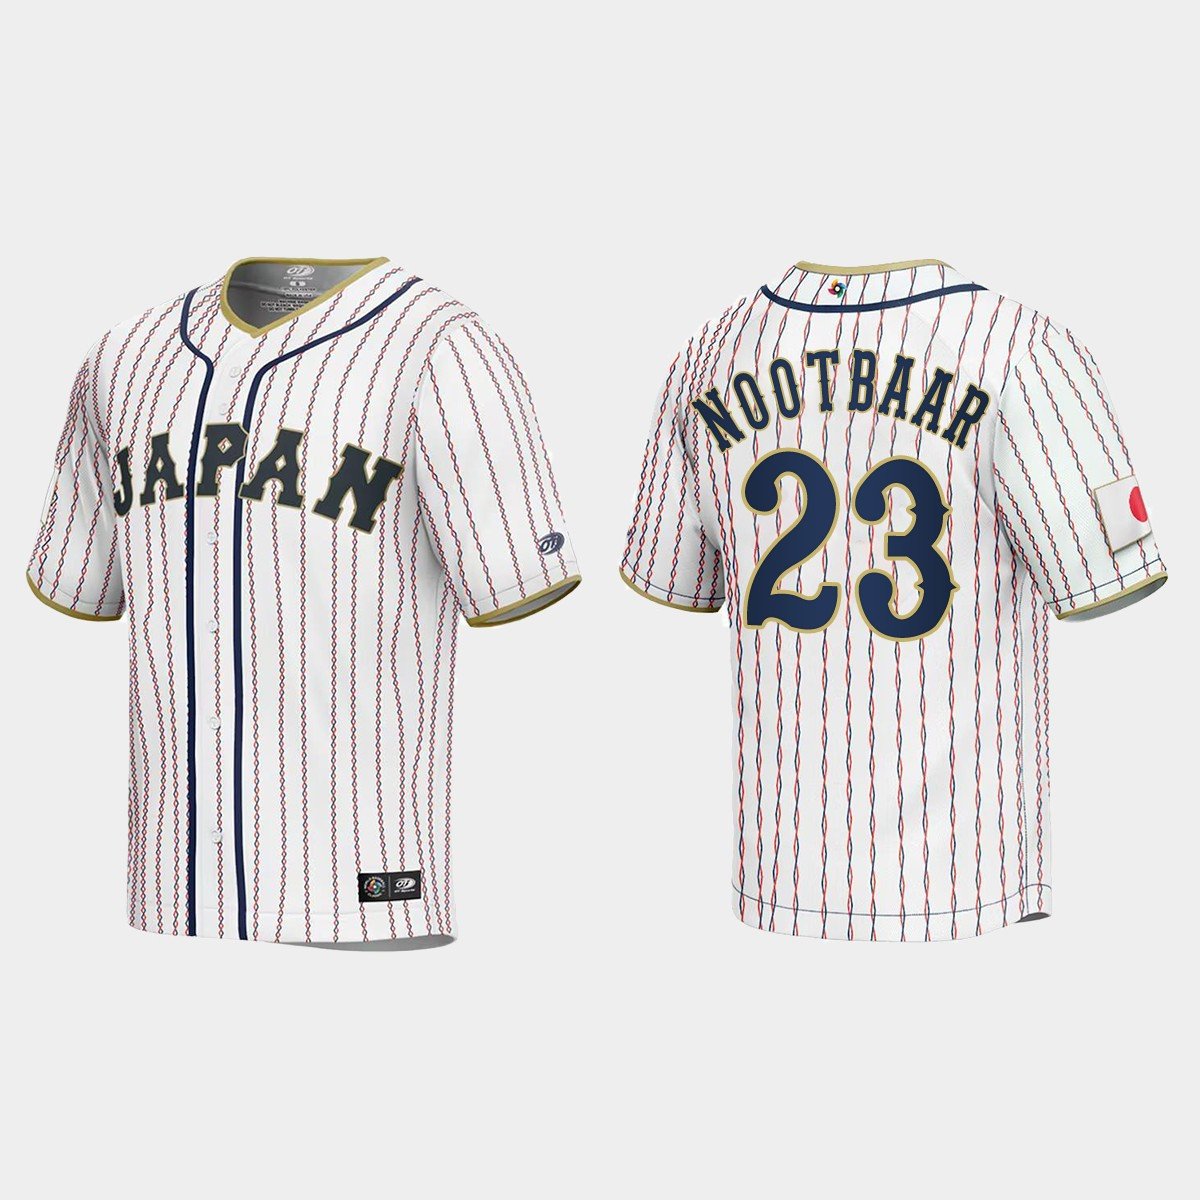 Official lars Nootbaar Nooooot MLBPA shirt - teejeep